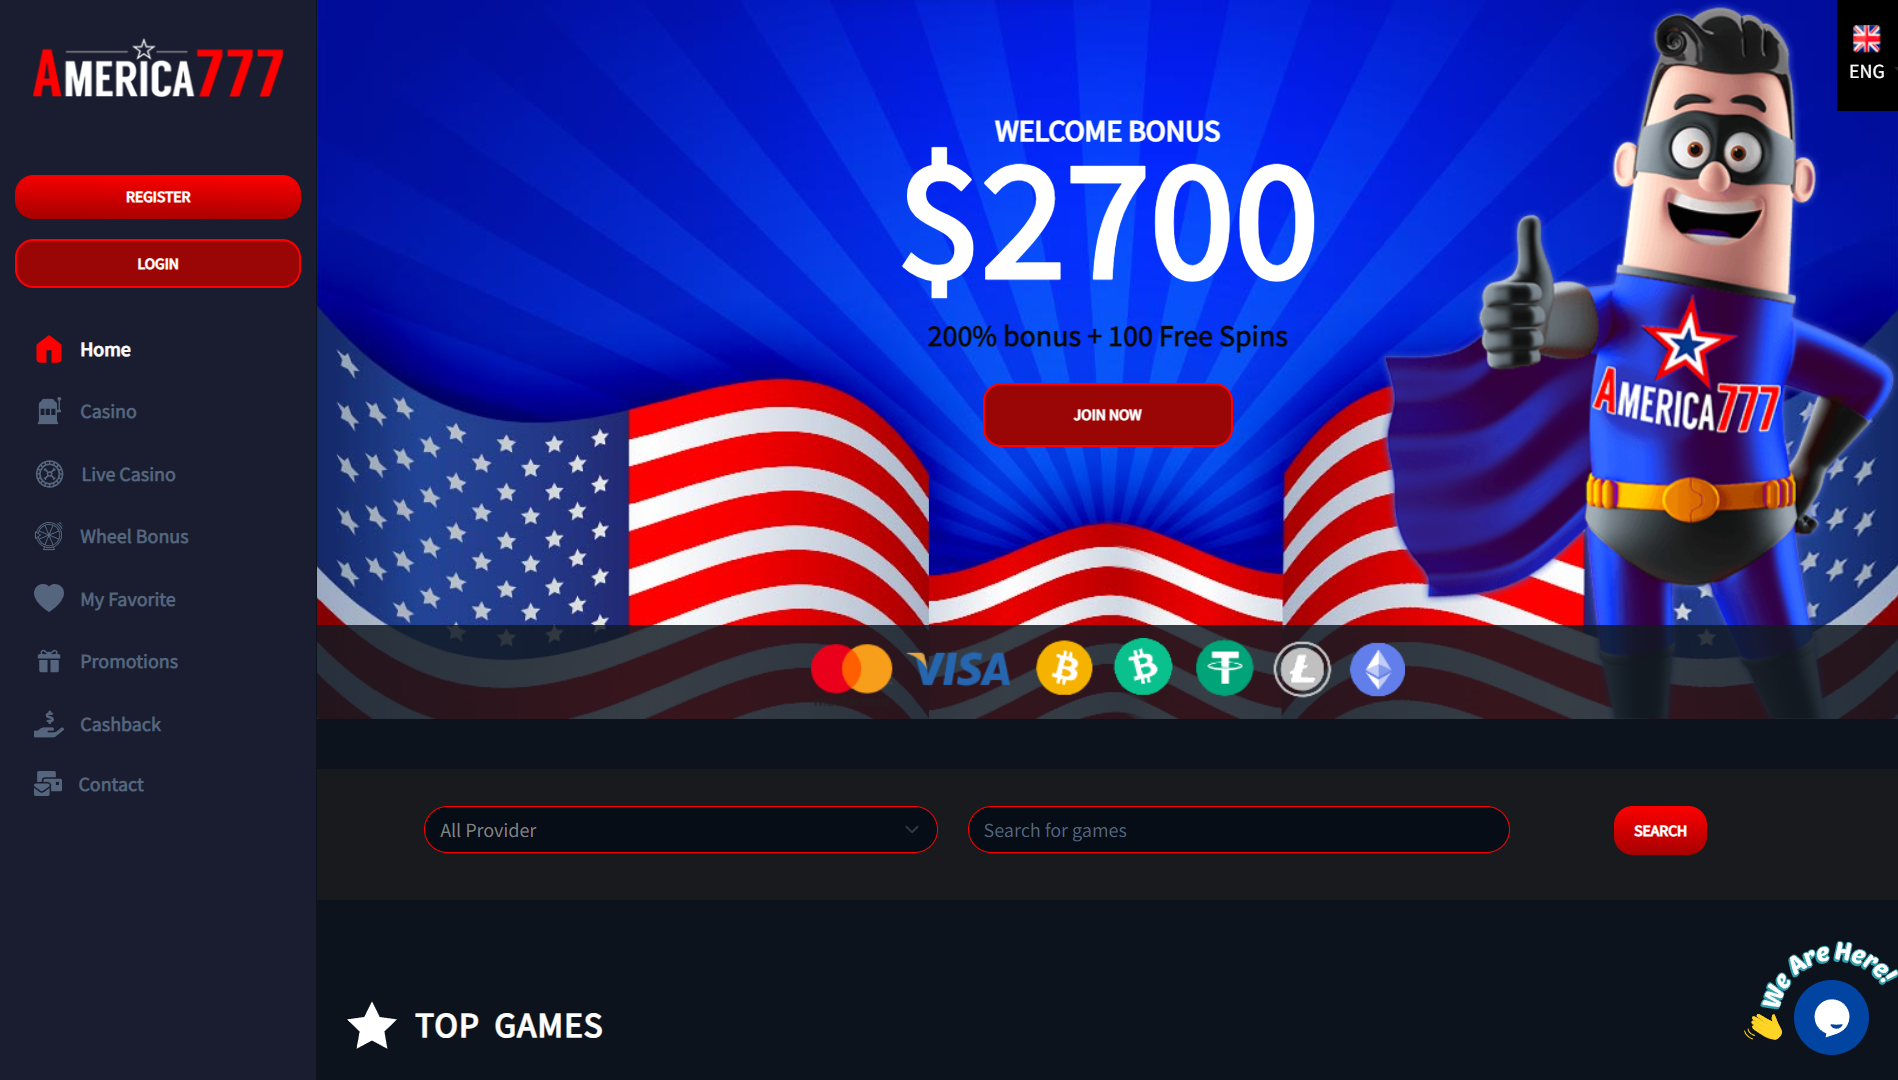 America777 Casino Home Page